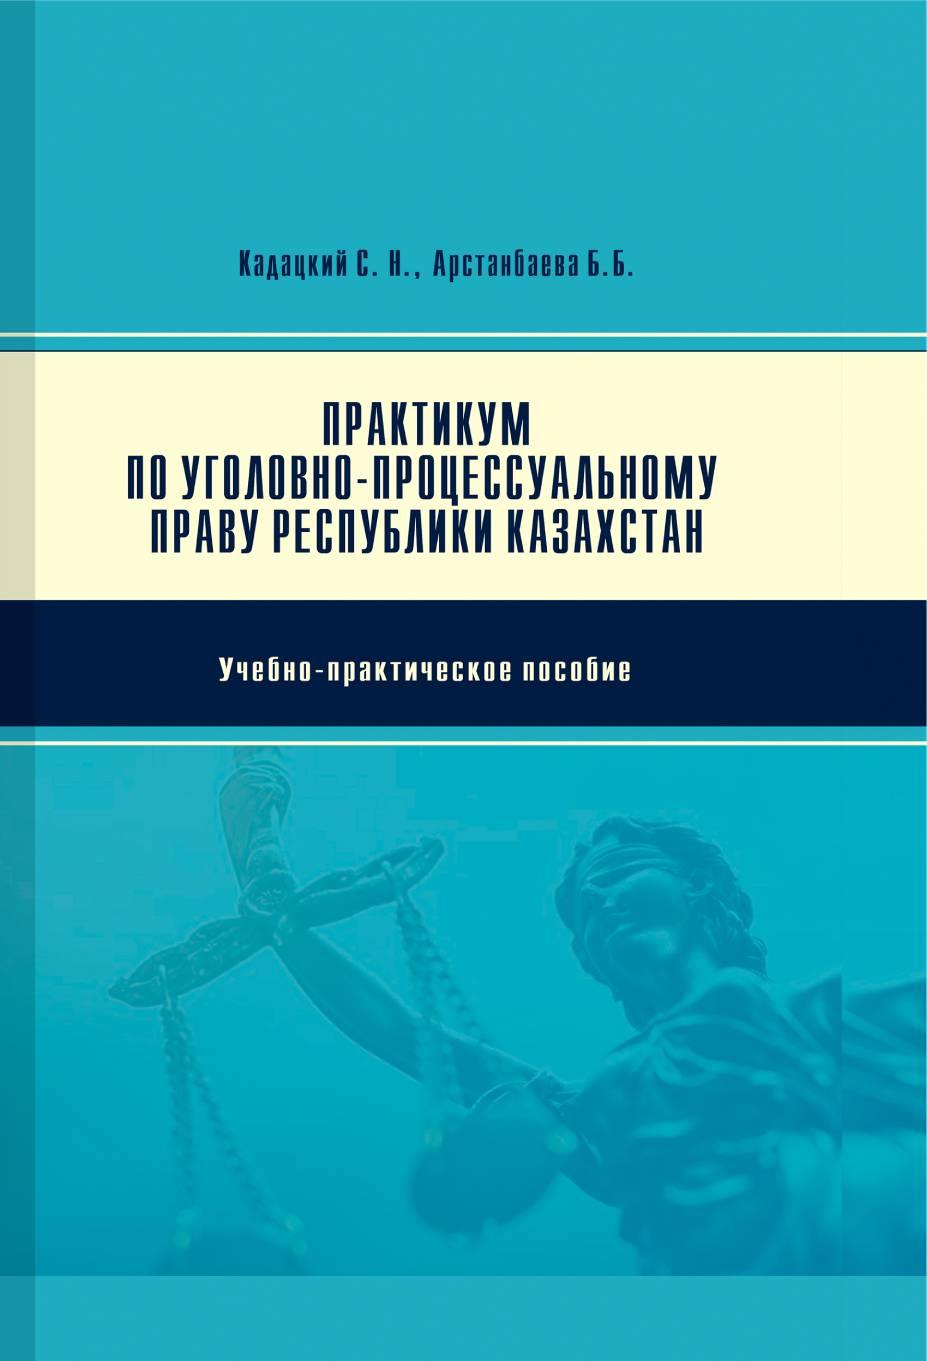 Практикум по уголовно-процессуальному праву Республики Казахстан:Учебно-практическое пособие.